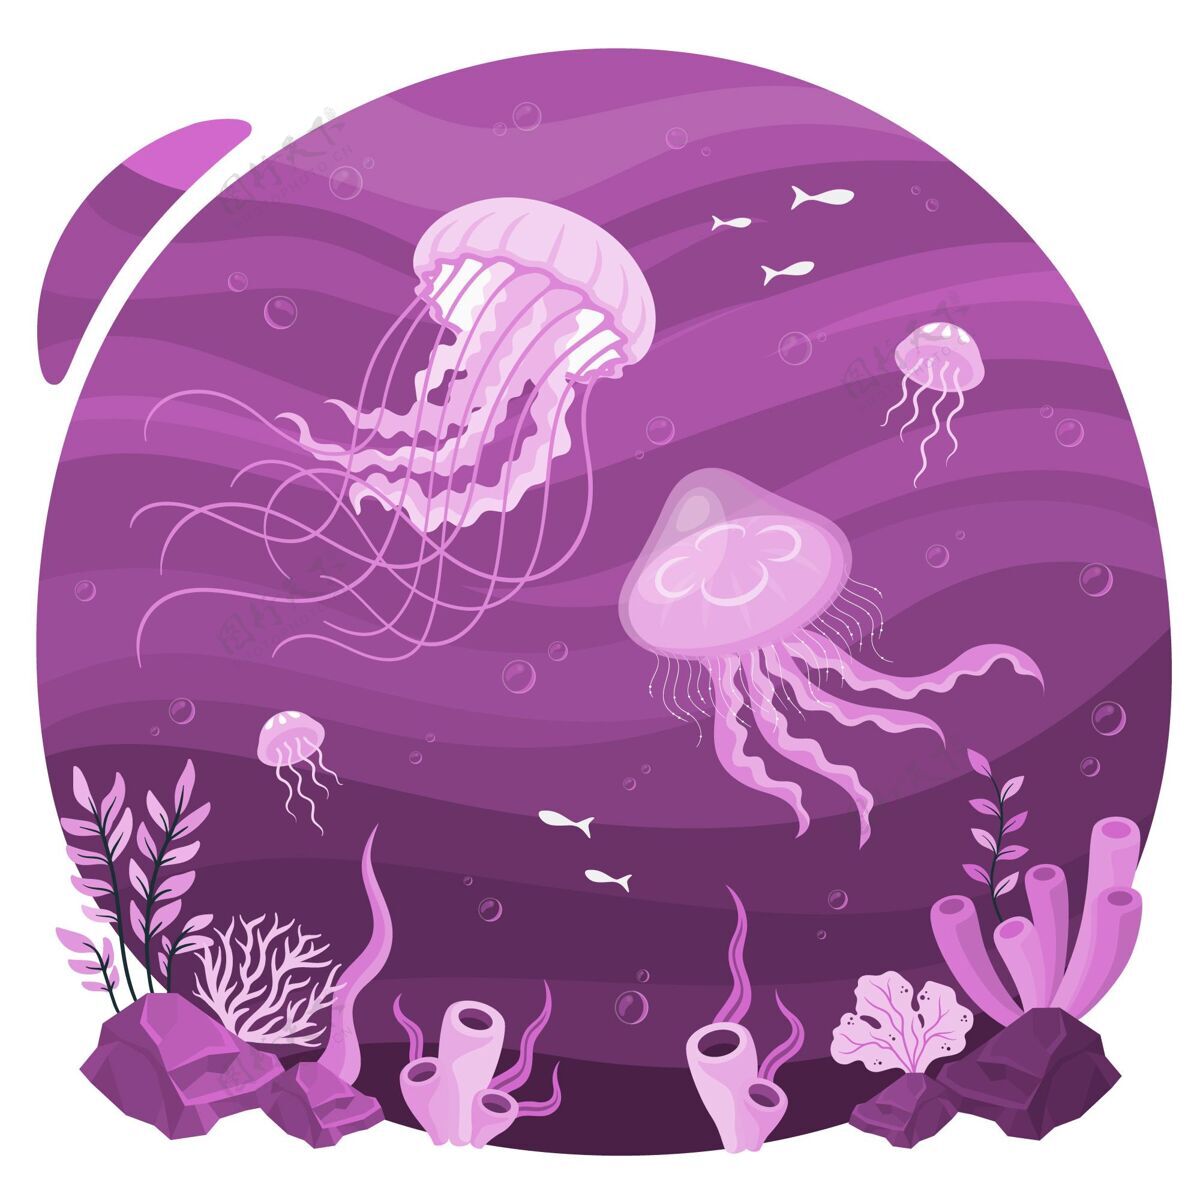 水下水母概念图游泳水生生态系统